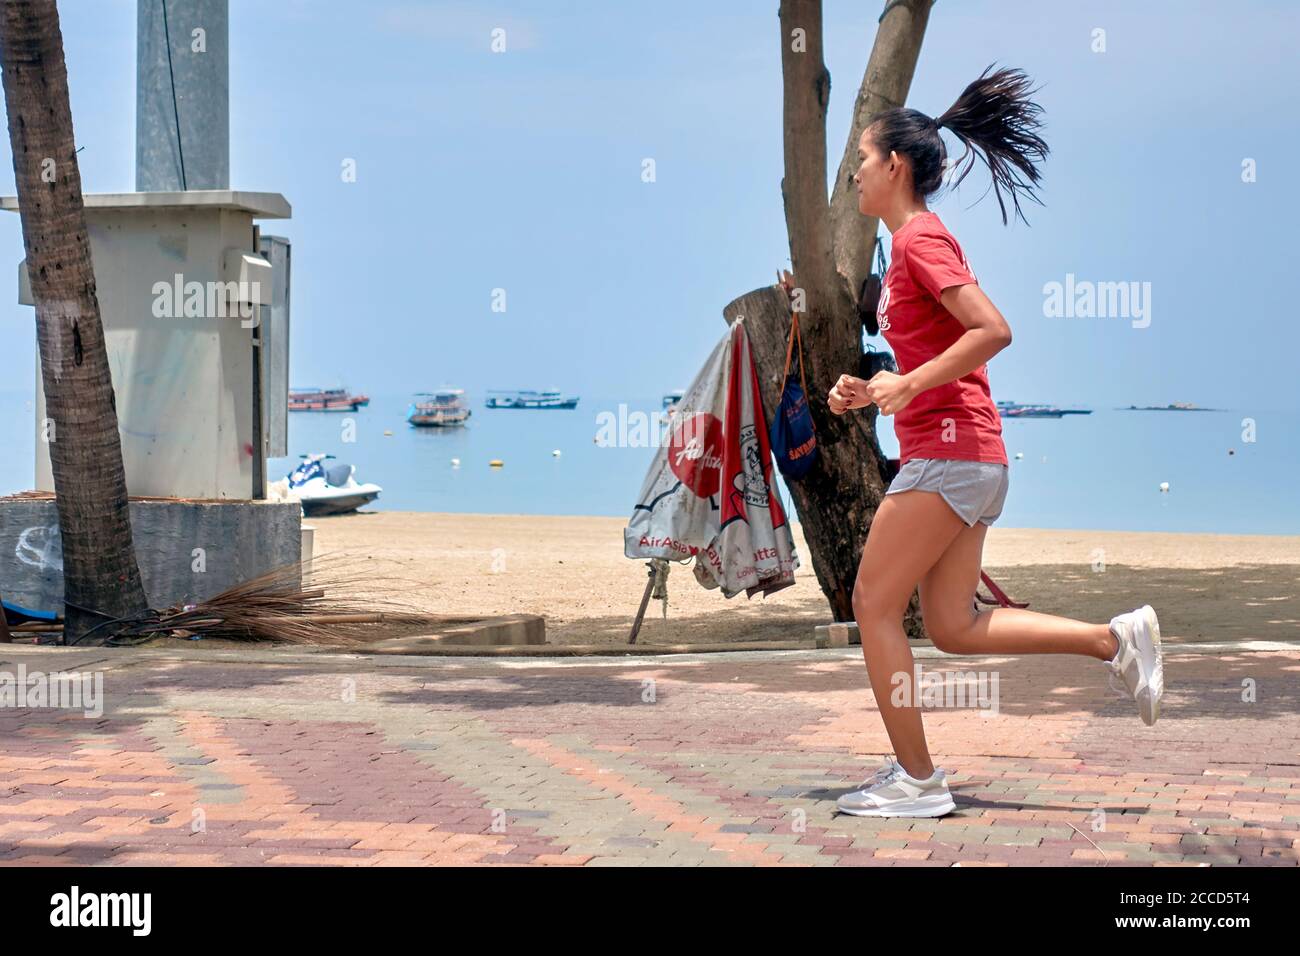 Frau läuft am Strand entlang, Frau halten fit Übung. Menschen trainieren. Thailand Südostasien Stockfoto